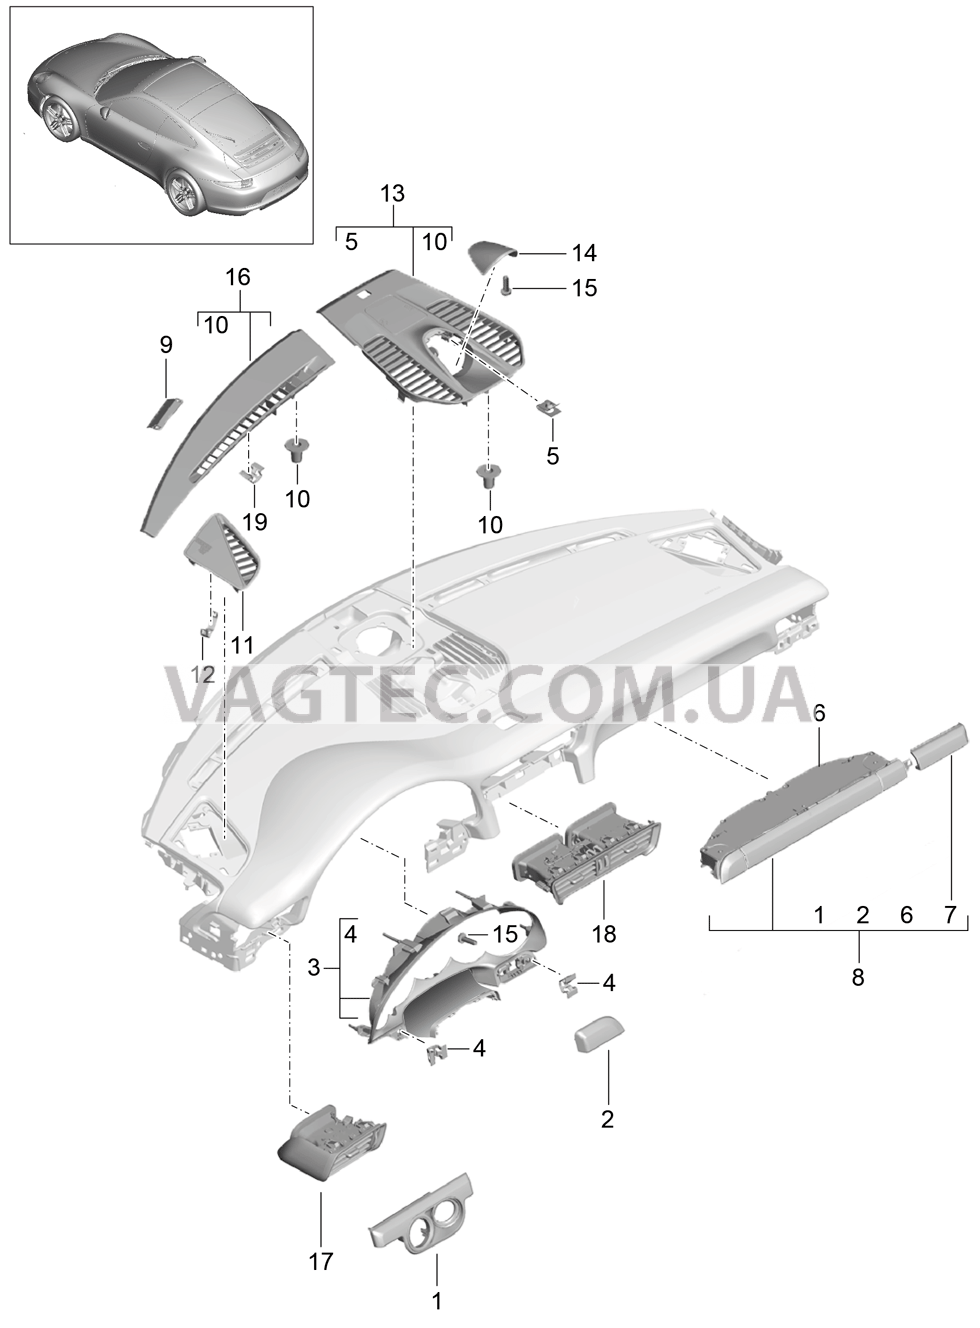 809-005 Детали, Облицовка передней панели, Верхняя часть для PORSCHE 911.Carrera 2012-2016